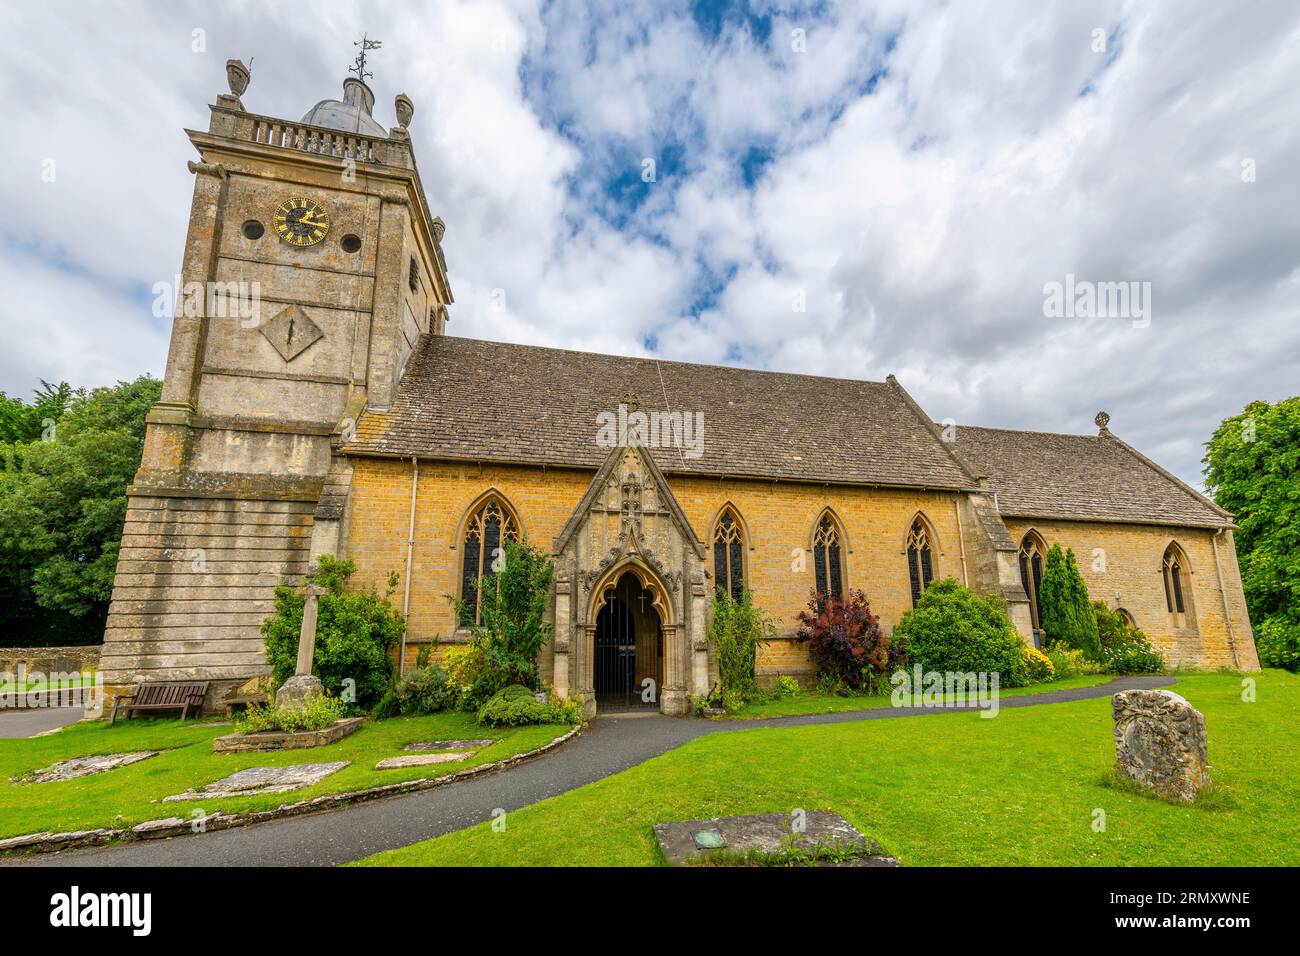 Église anglicane Saint-Laurent du 12e siècle dans le village pittoresque de Bourton-on-the-Hill dans le Cotswold District du Gloucestershire, en Angleterre. Banque D'Images